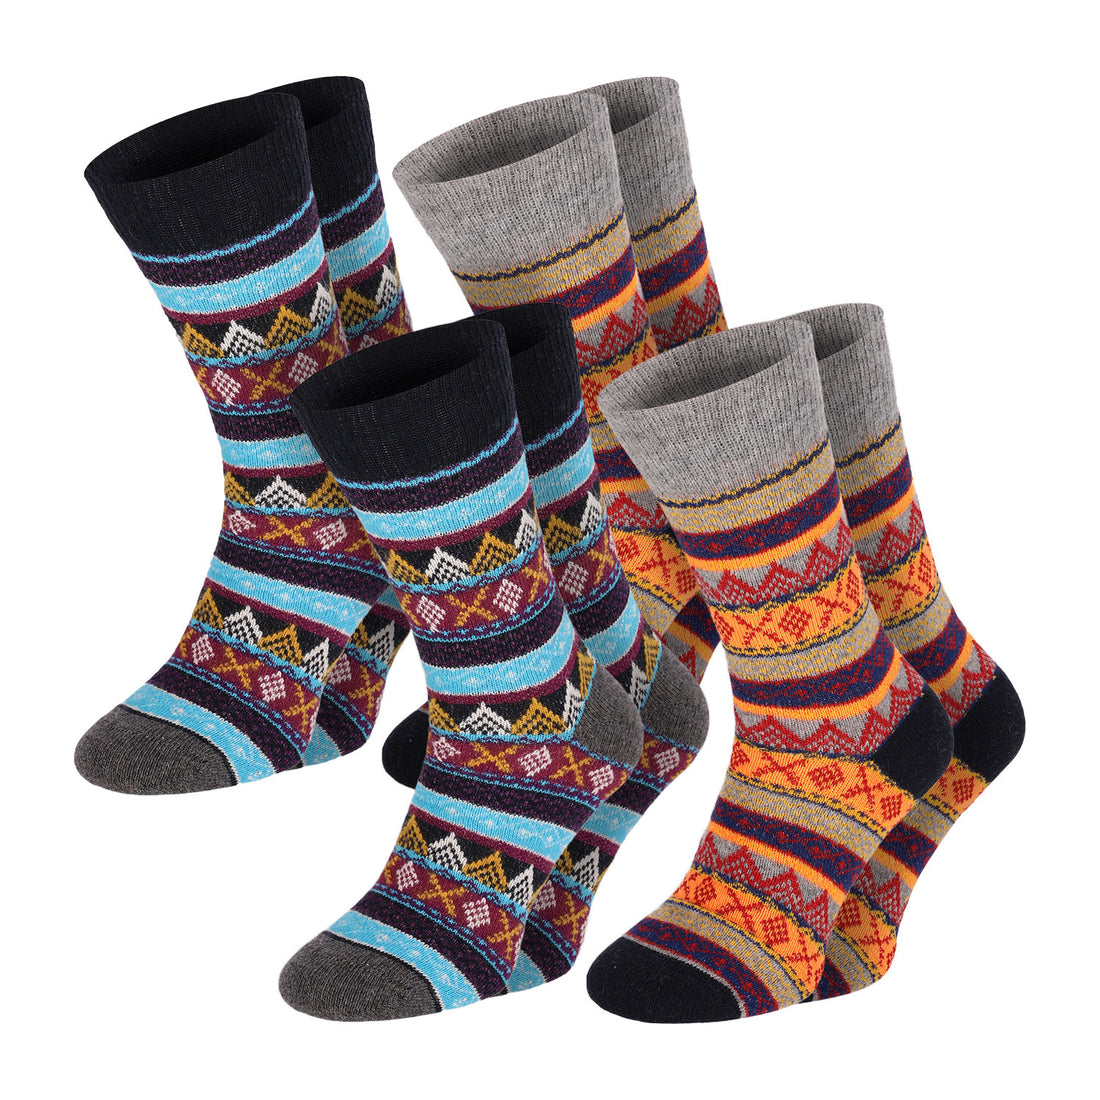 ChiliLifestyle Socken Wool Color Schaf Wolle Damen Herren Warm 4 Paar